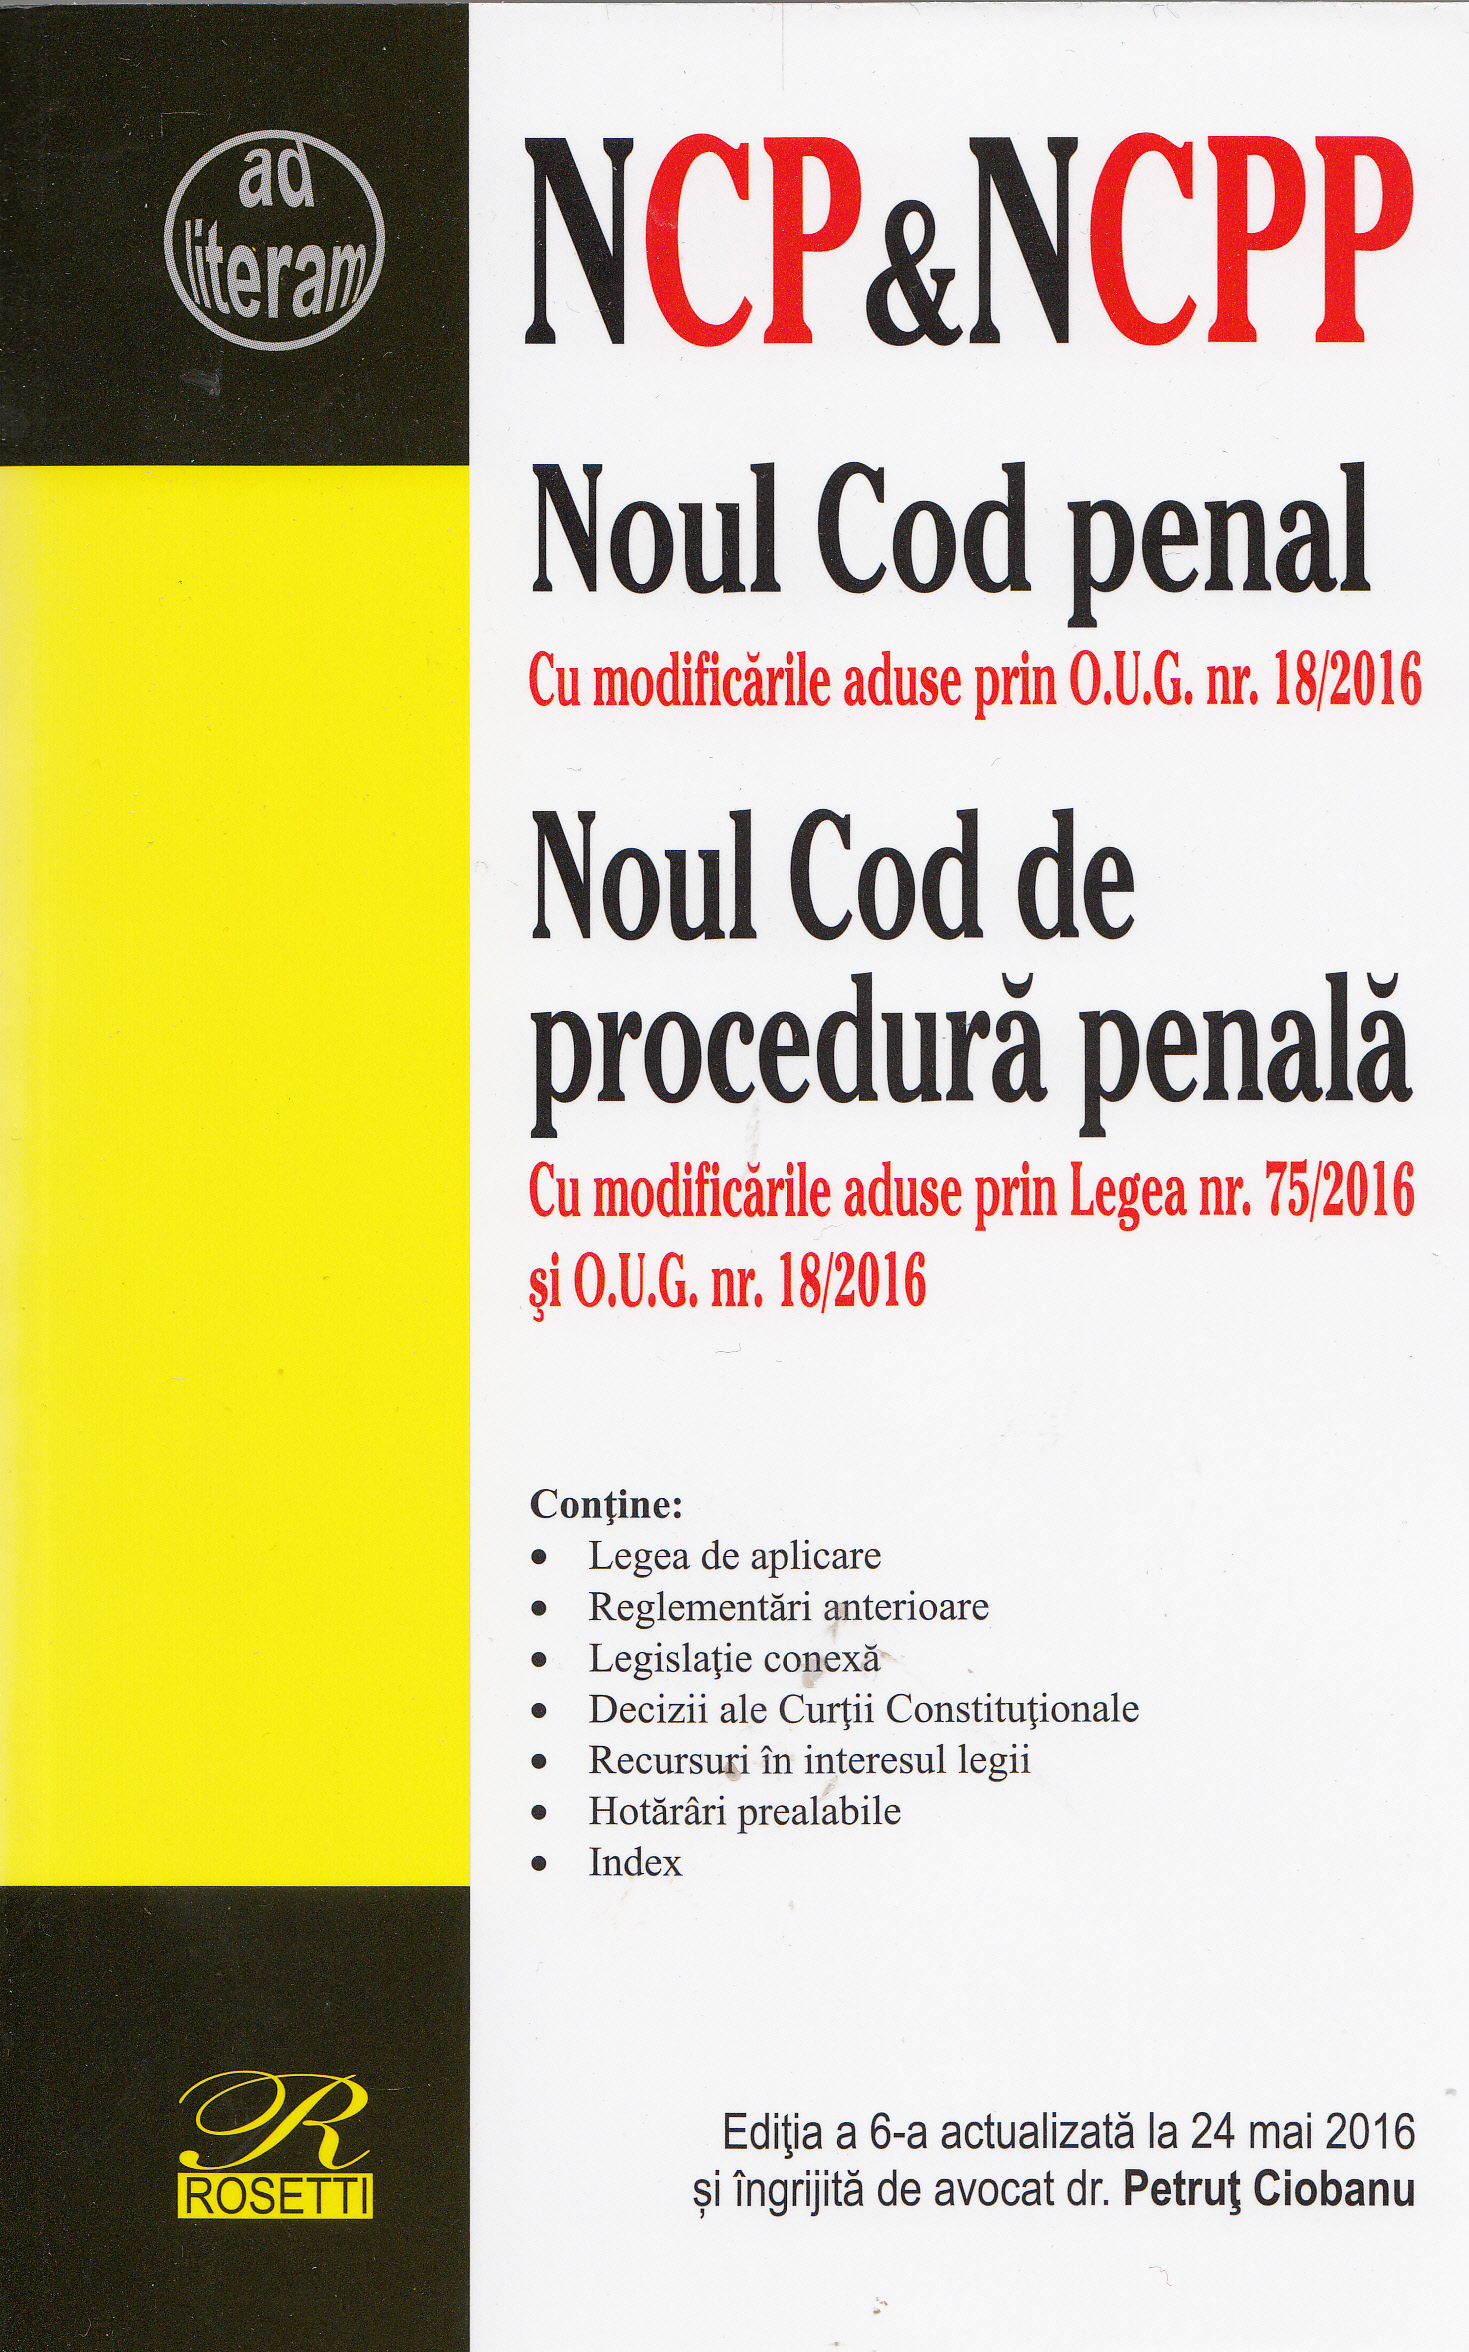 Noul Cod penal. Noul Cod de procedura penala act. 24 mai 2016